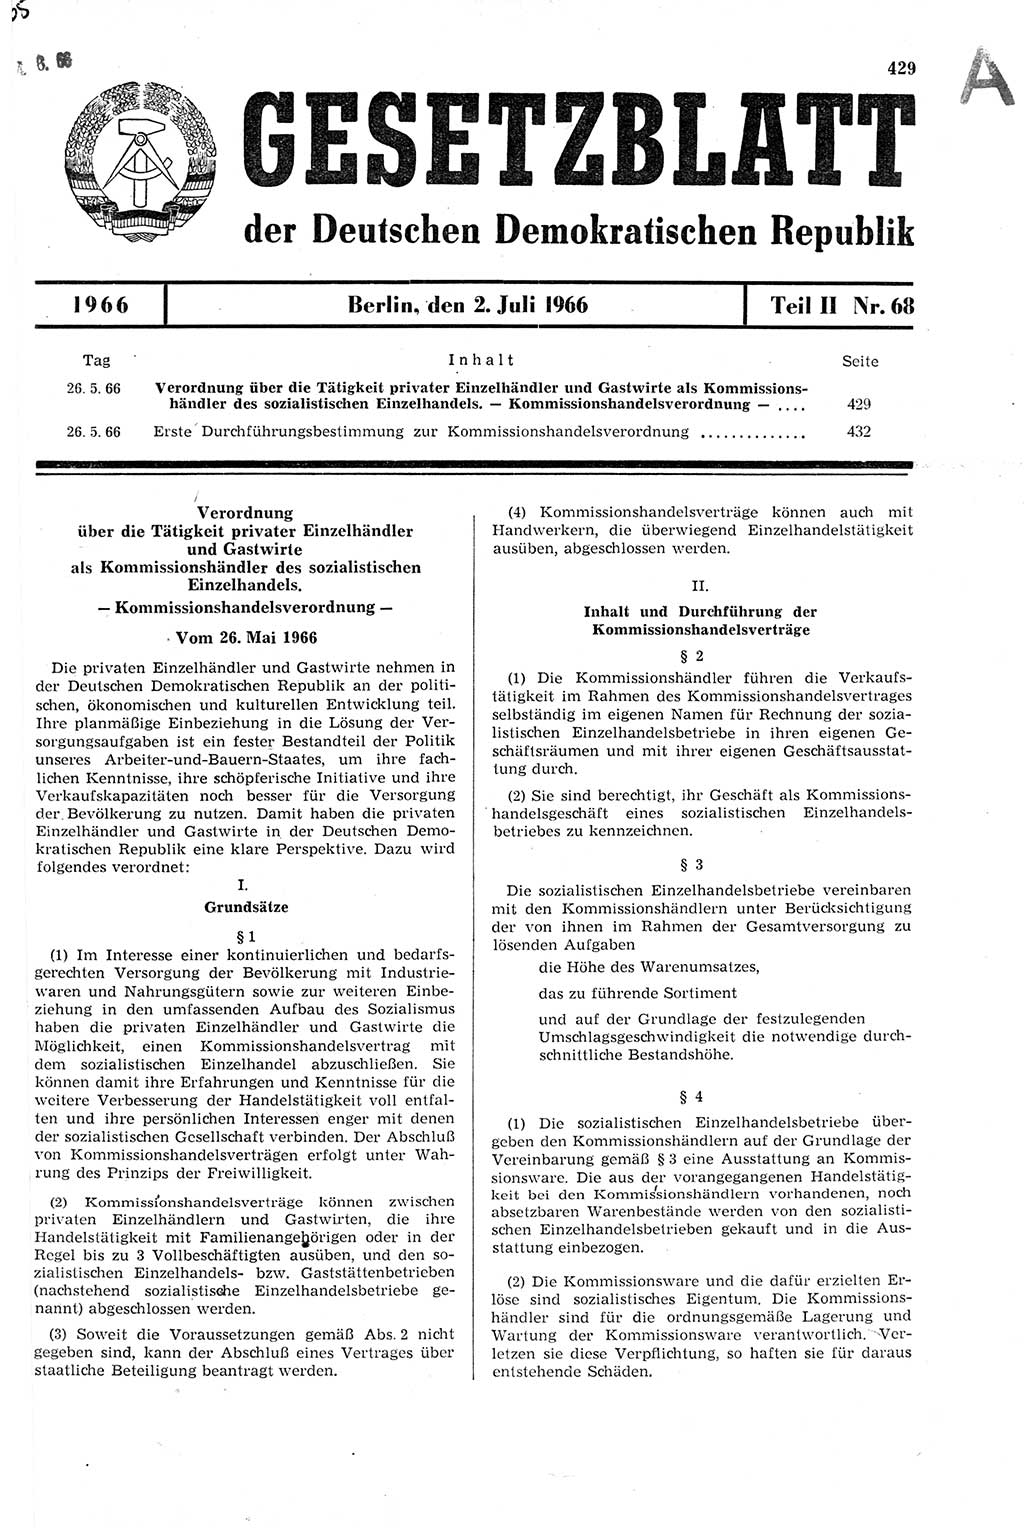 Gesetzblatt (GBl.) der Deutschen Demokratischen Republik (DDR) Teil ⅠⅠ 1966, Seite 429 (GBl. DDR ⅠⅠ 1966, S. 429)